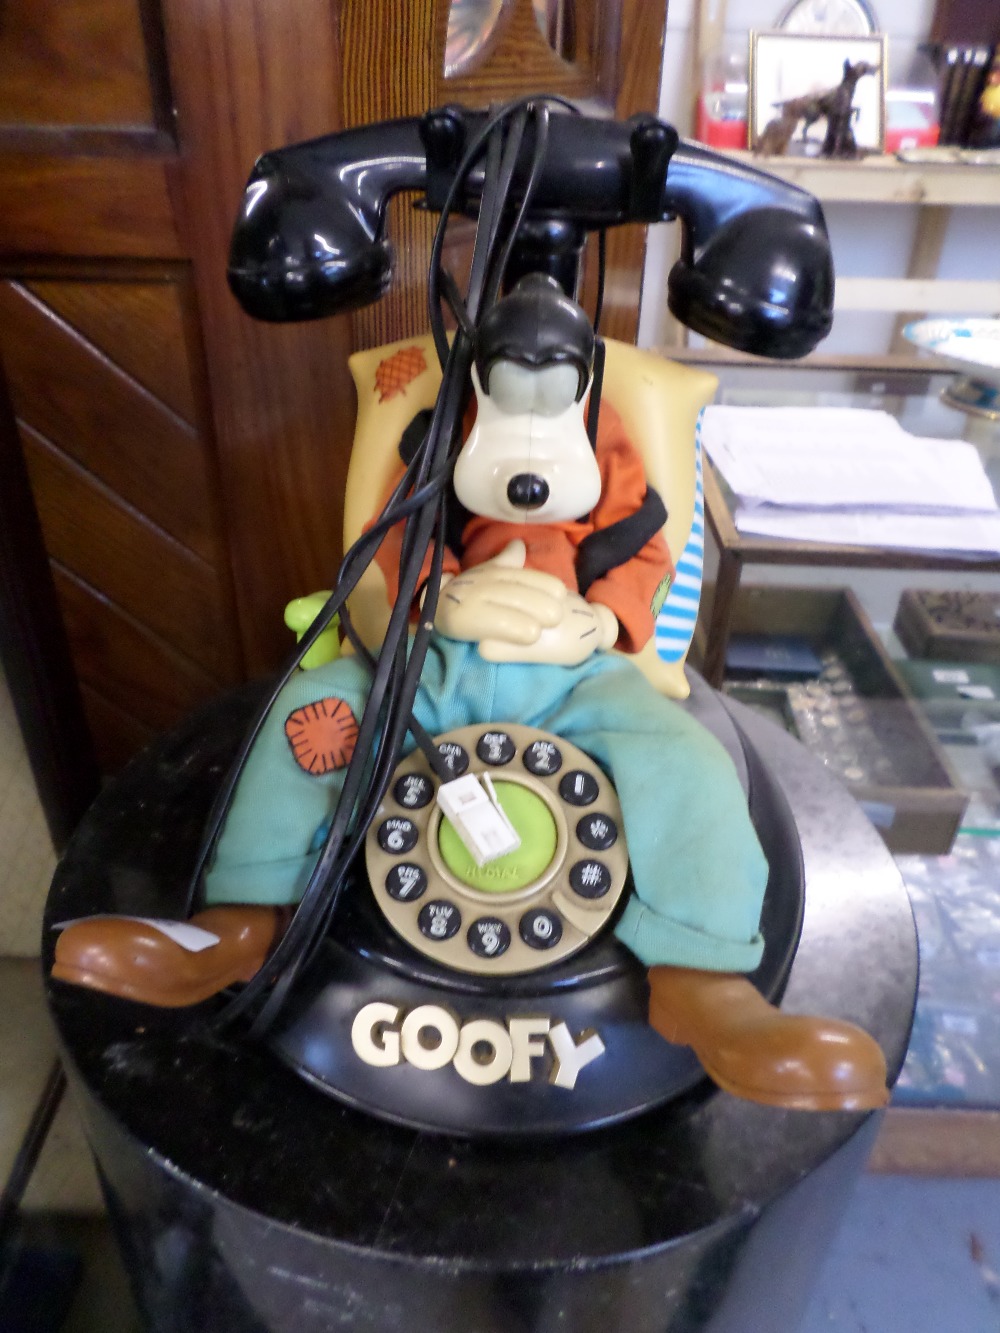 Old Goofy Disney telephone